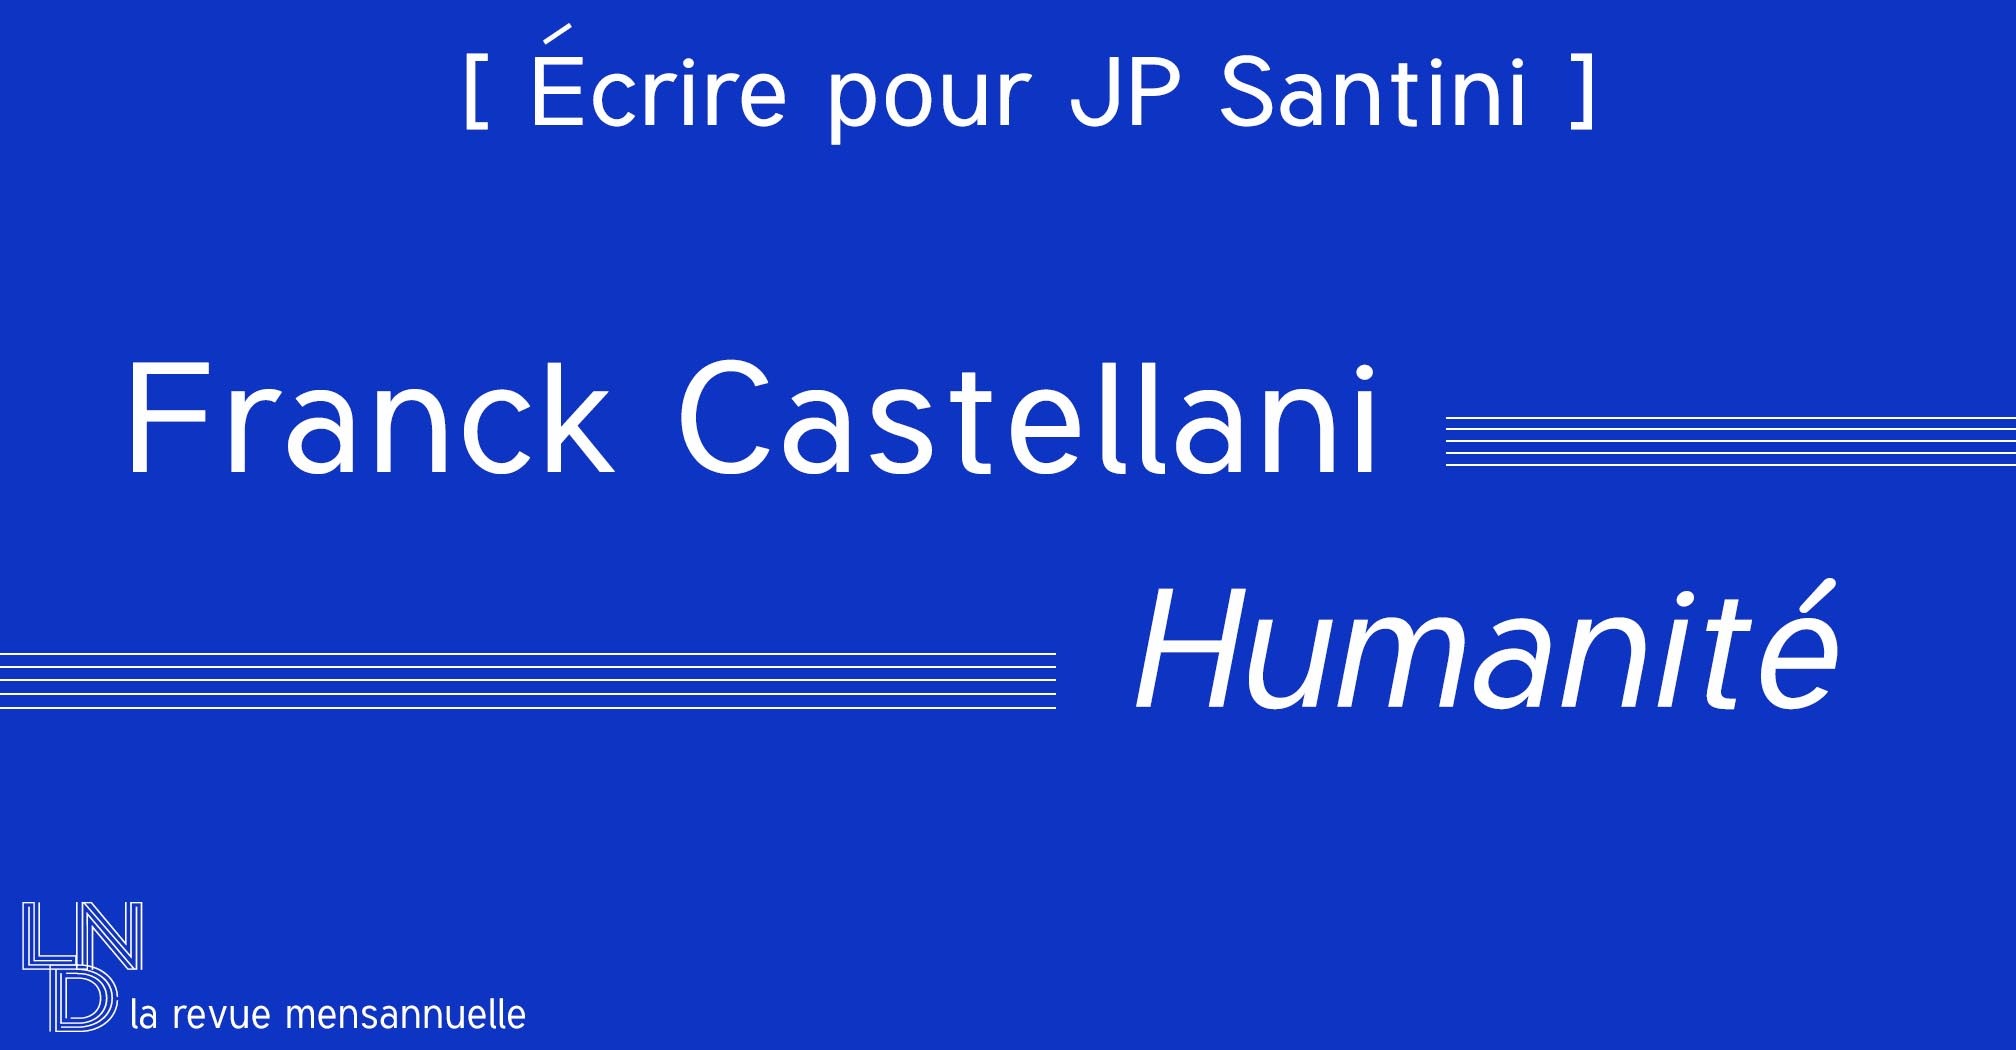 [ Écrire pour JP Santini ] Franck Castellani - Humanité